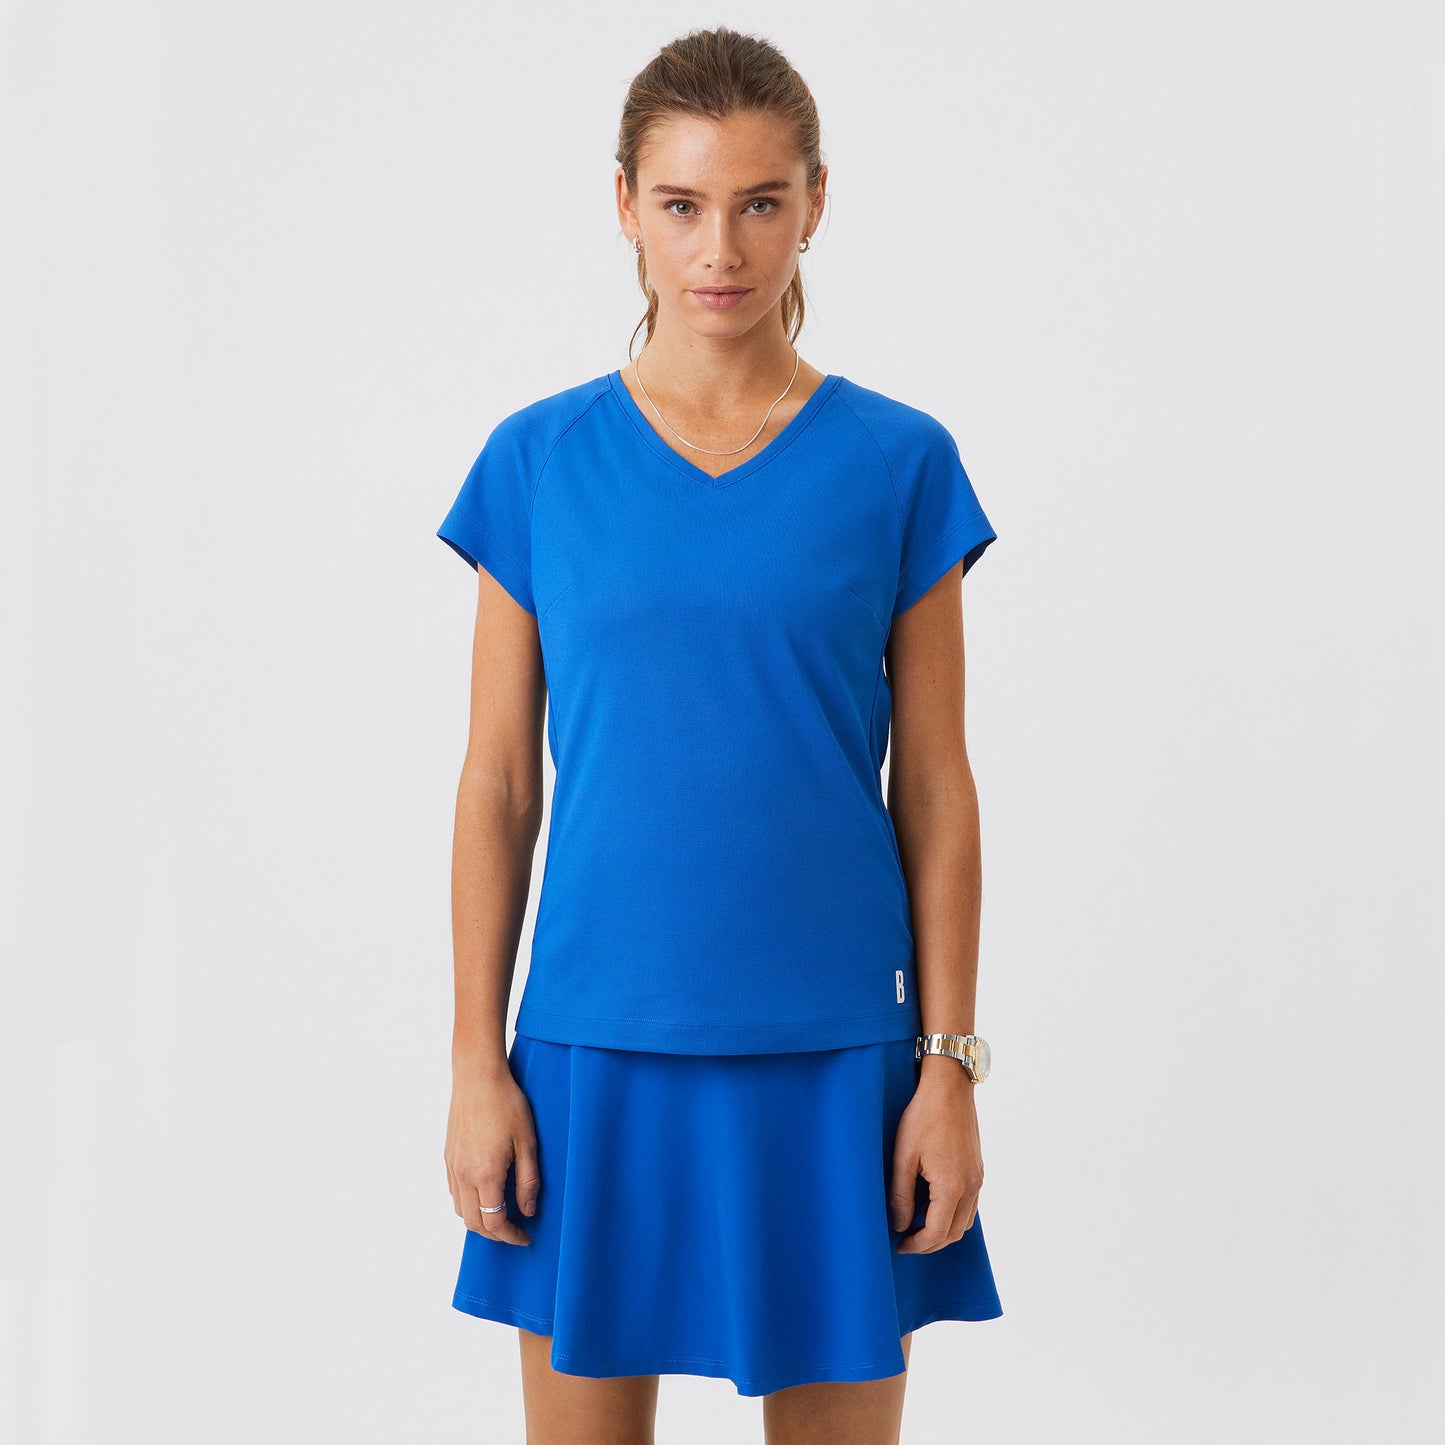 Björn Borg Ace Women's Tennis Shirt Blue (5)